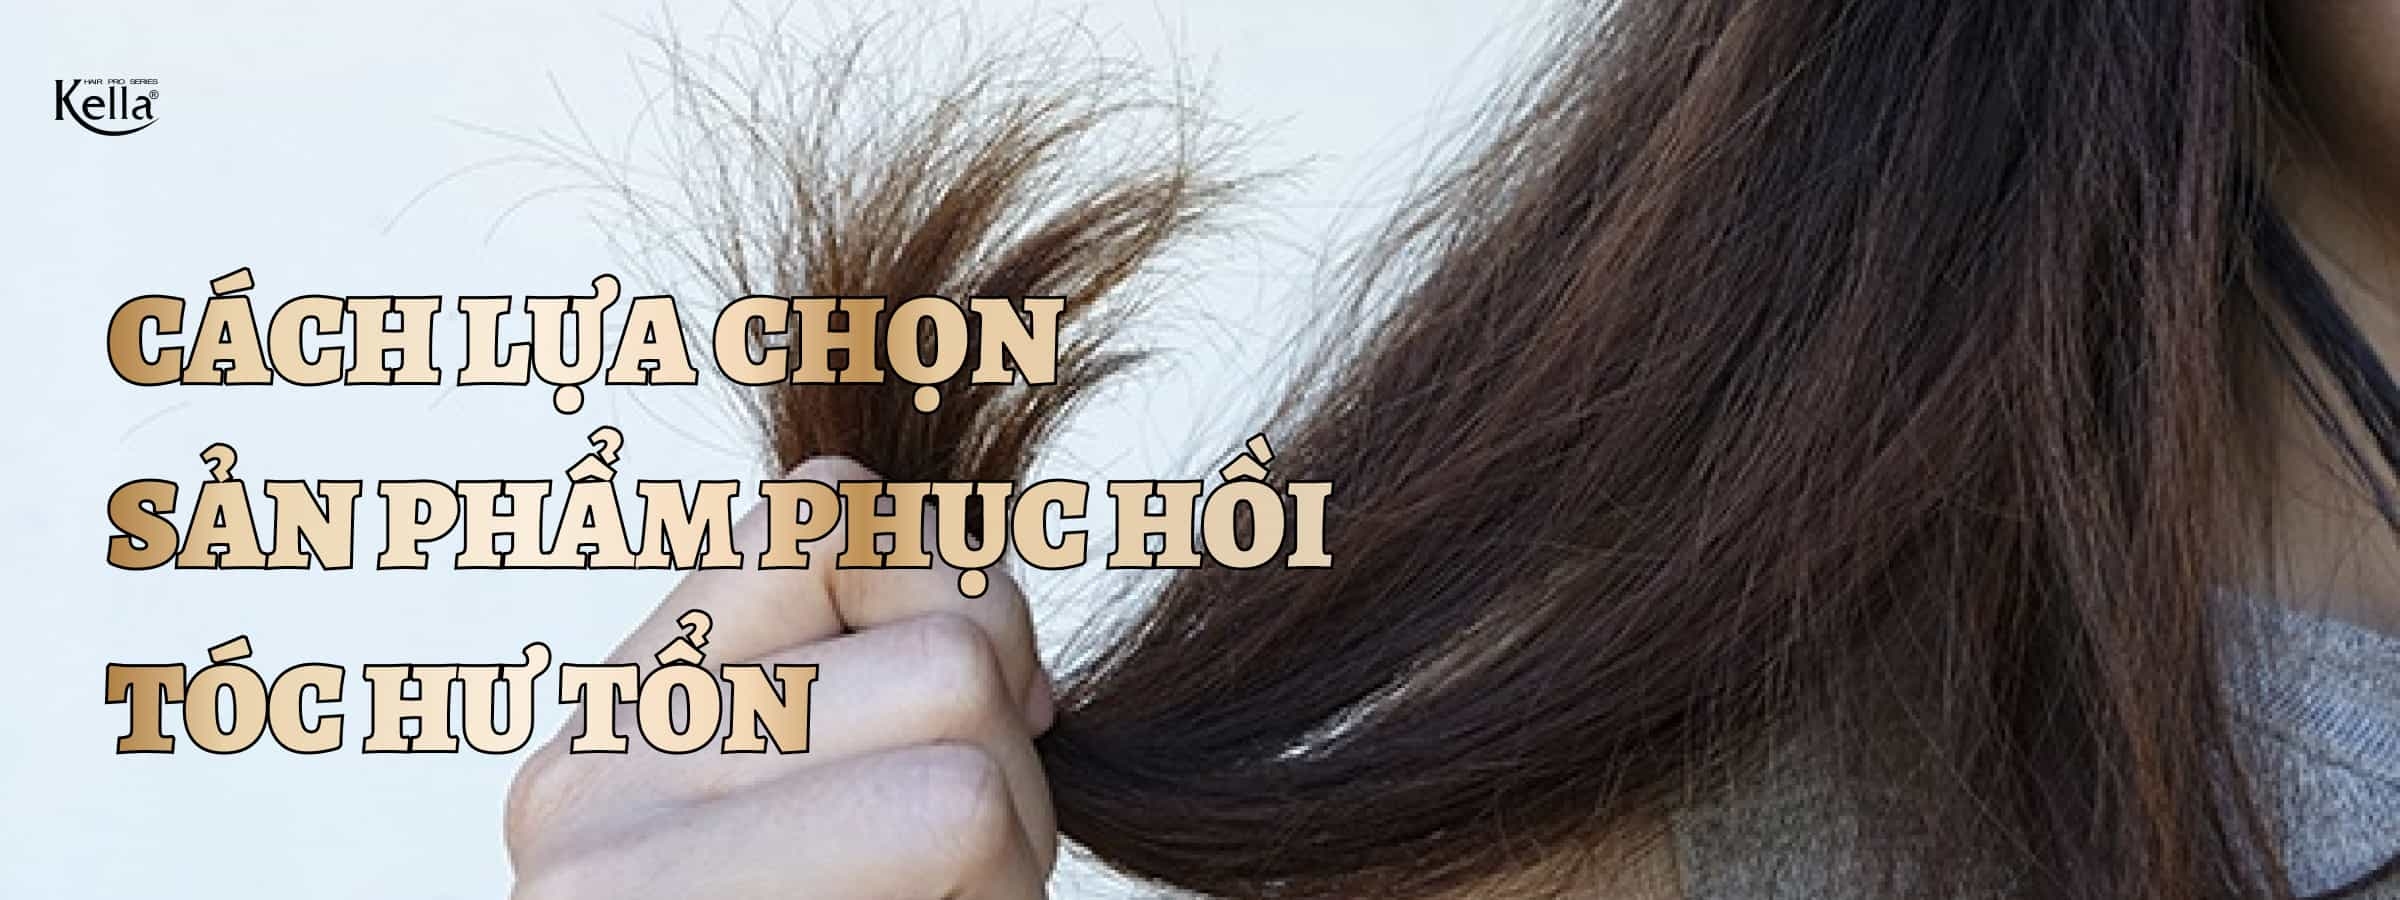 Cách chọn những sản phẩm tốt cho tóc giúp phục hồi mái tóc hư tổn hiệu quả